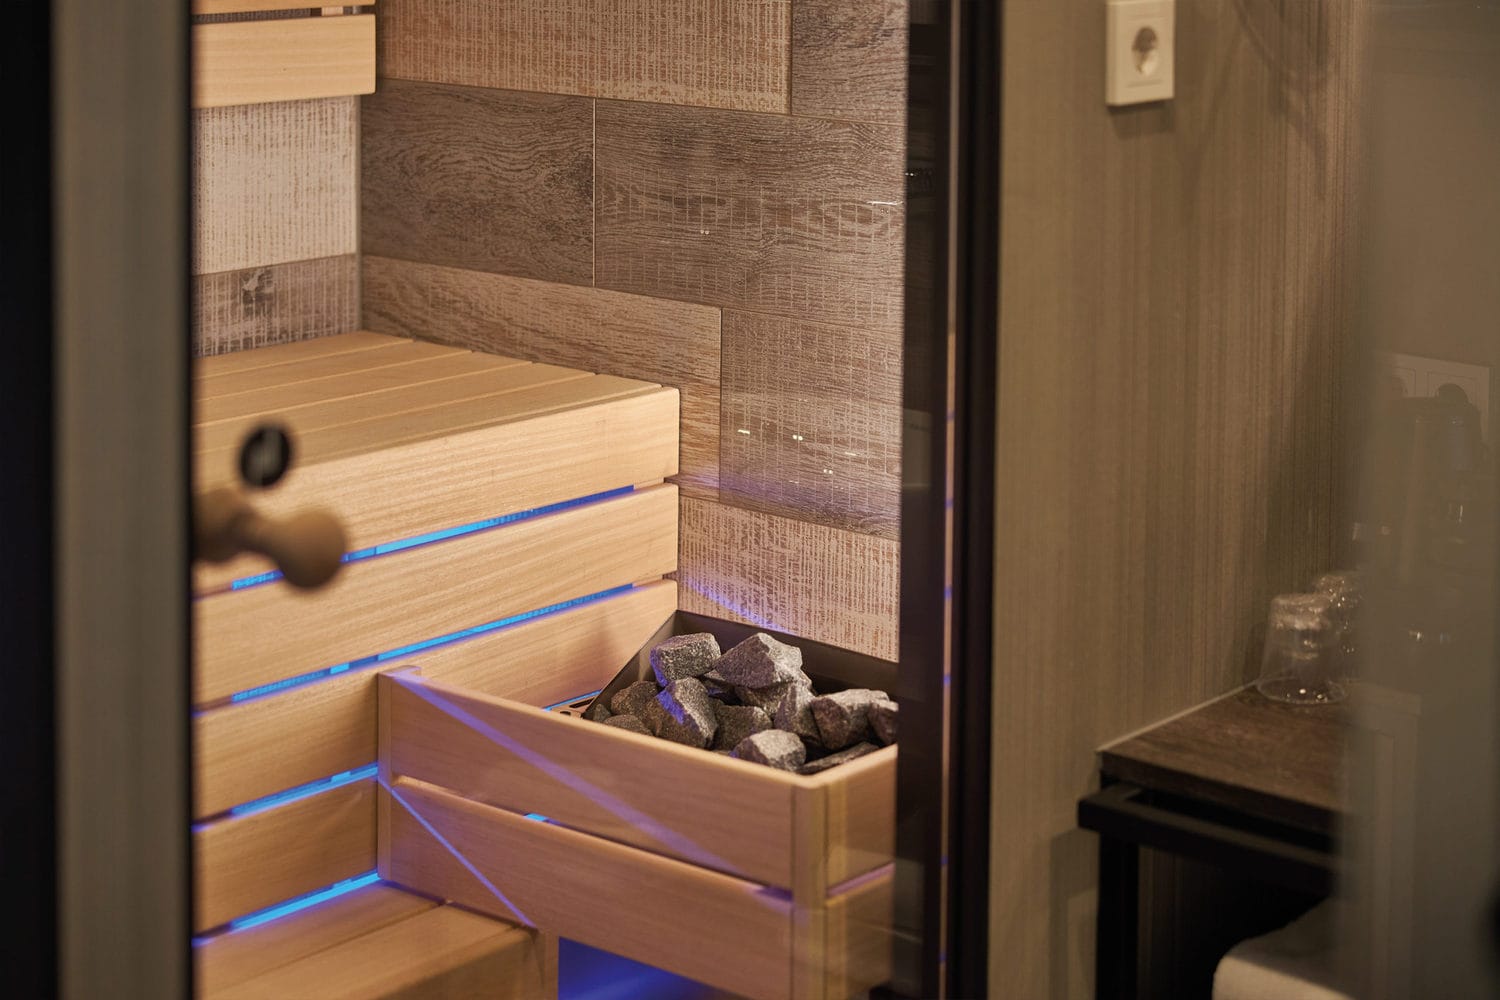 Inntel Hotels - Hotelkamer met een sauna